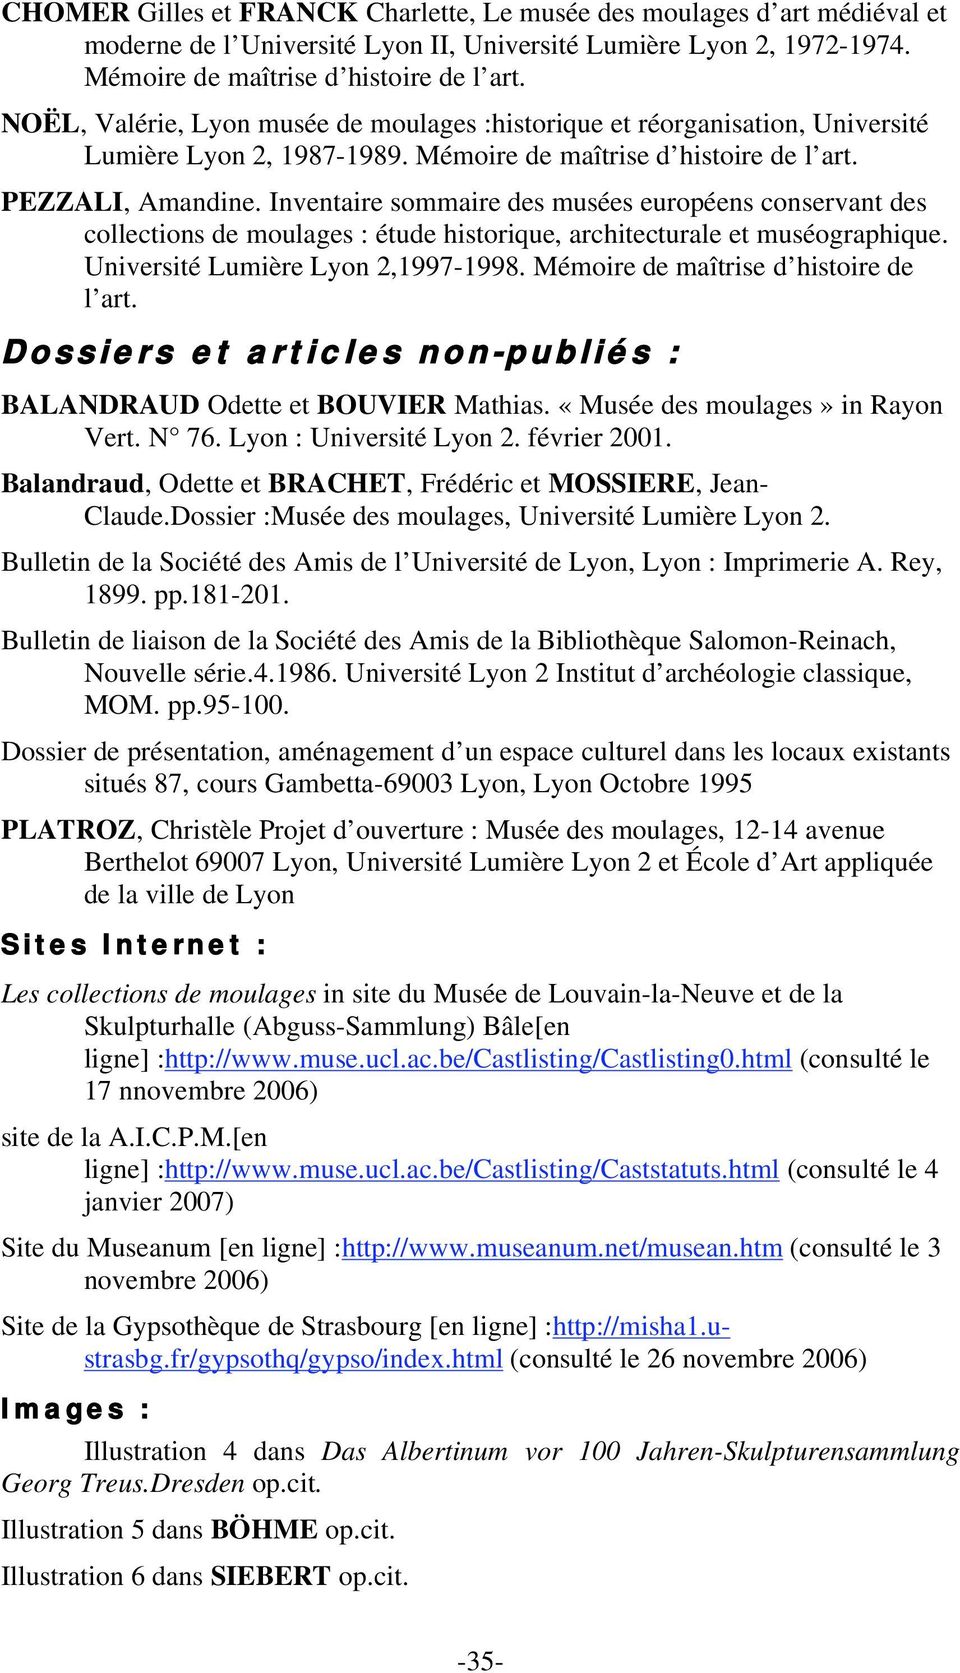 Inventaire sommaire des musées européens conservant des collections de moulages : étude historique, architecturale et muséographique. Université Lumière Lyon 2,1997-1998.